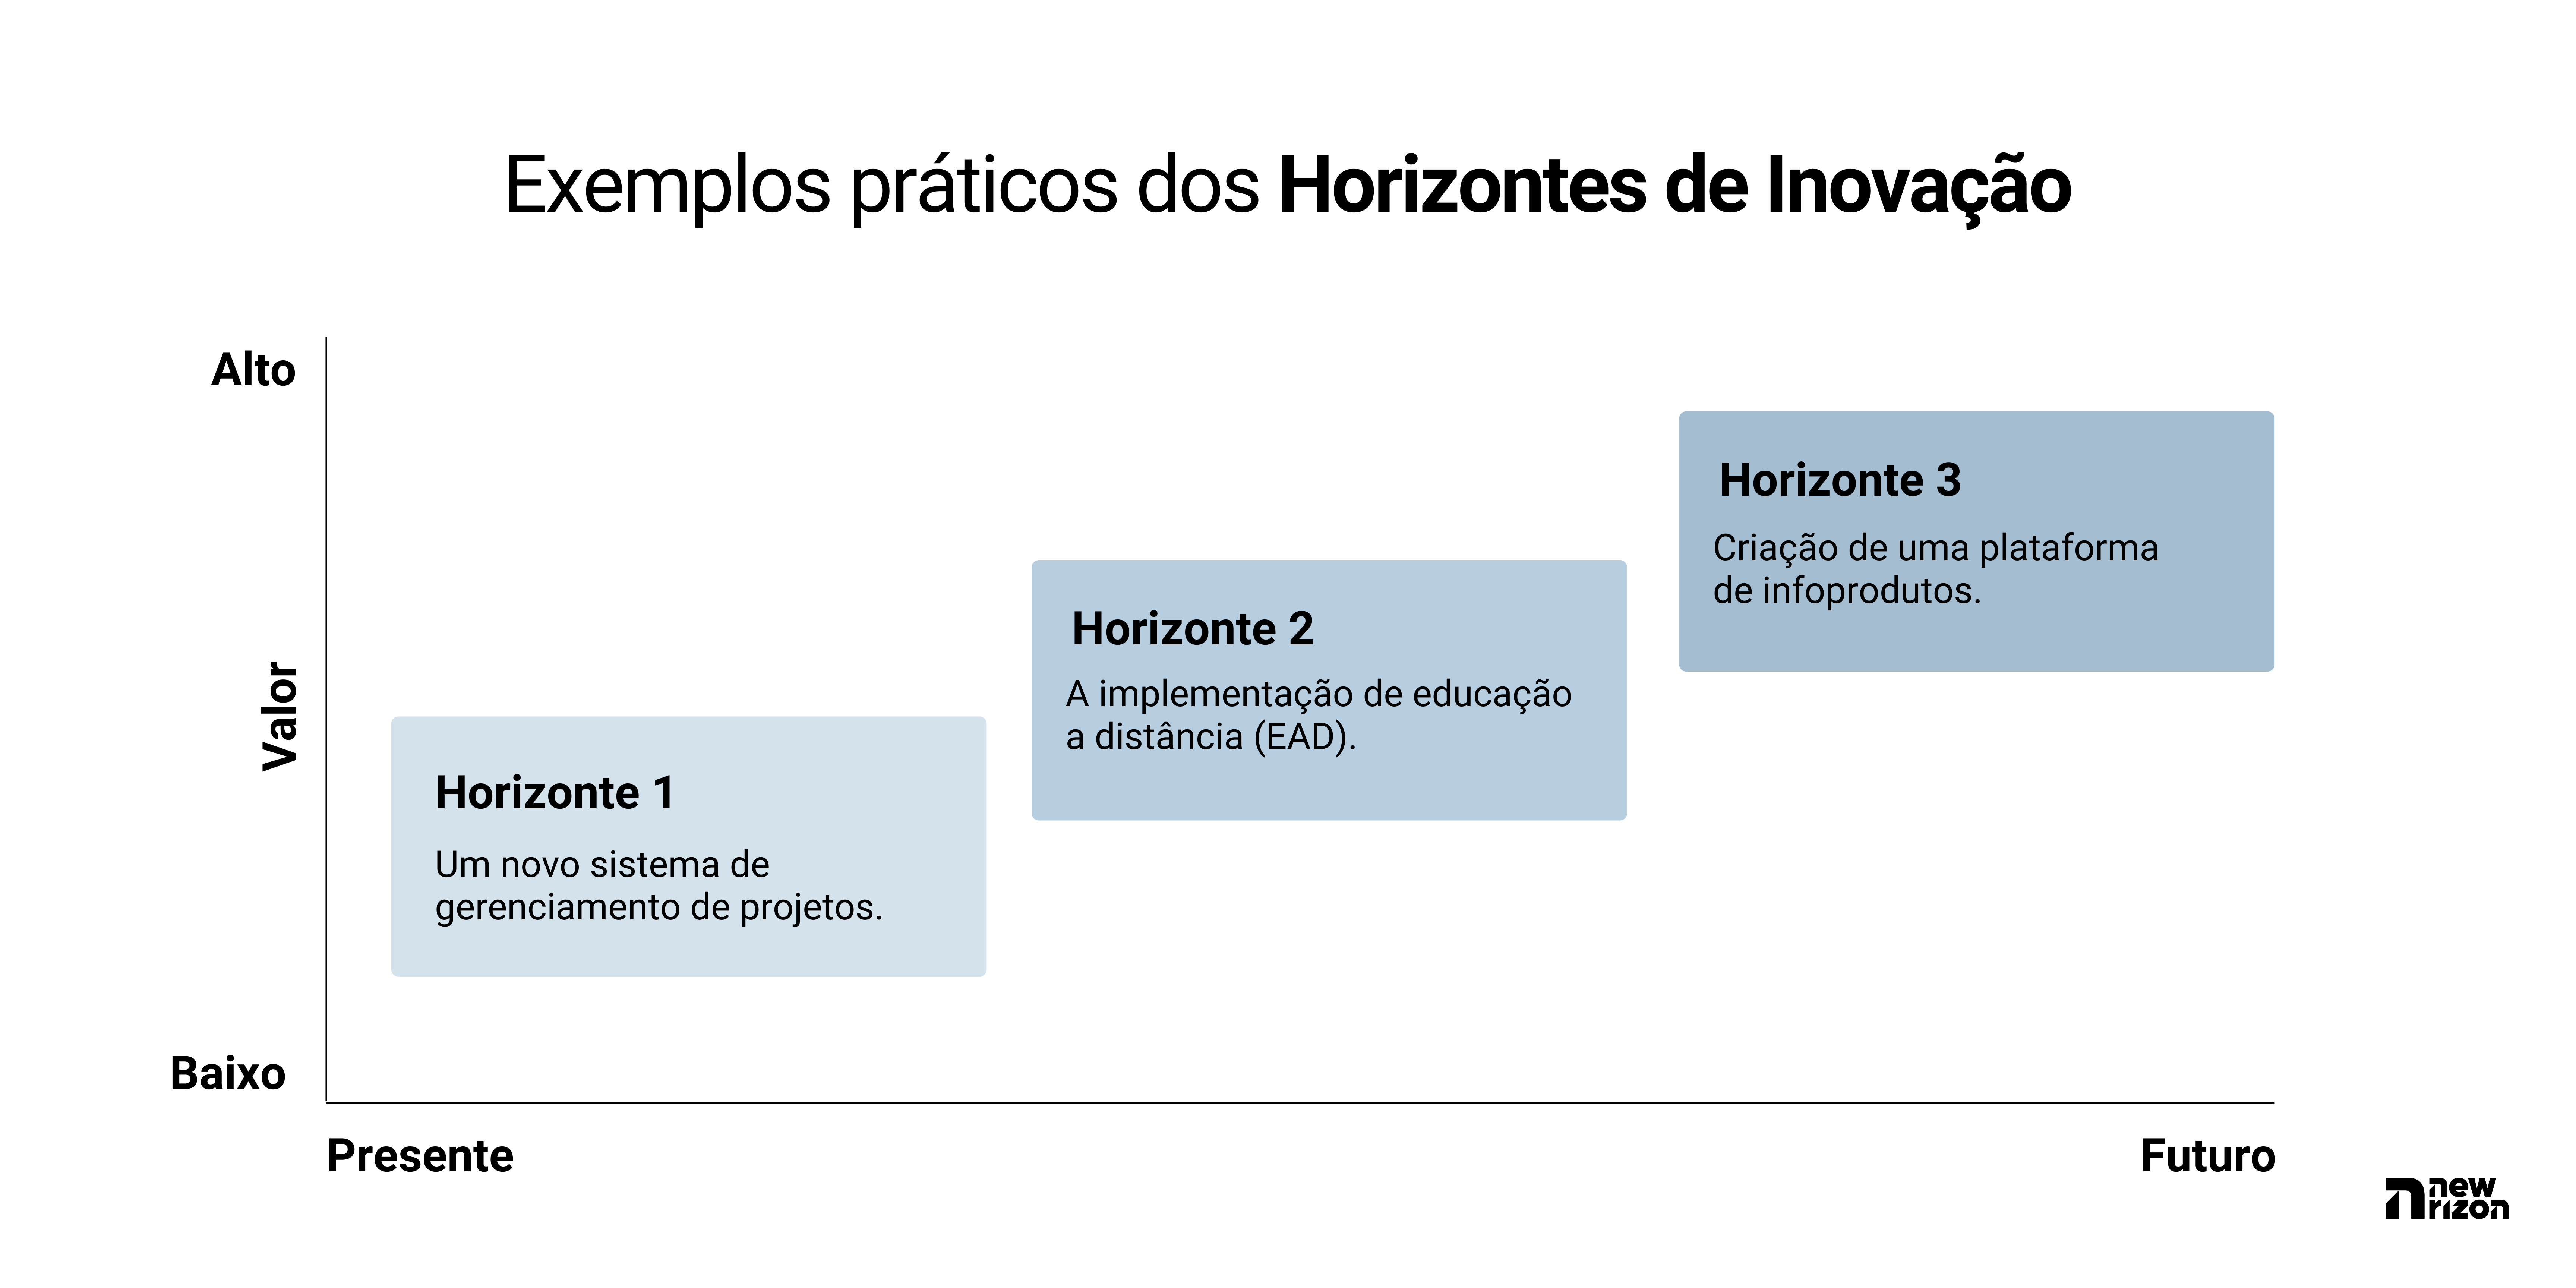 Horizontes de inovação